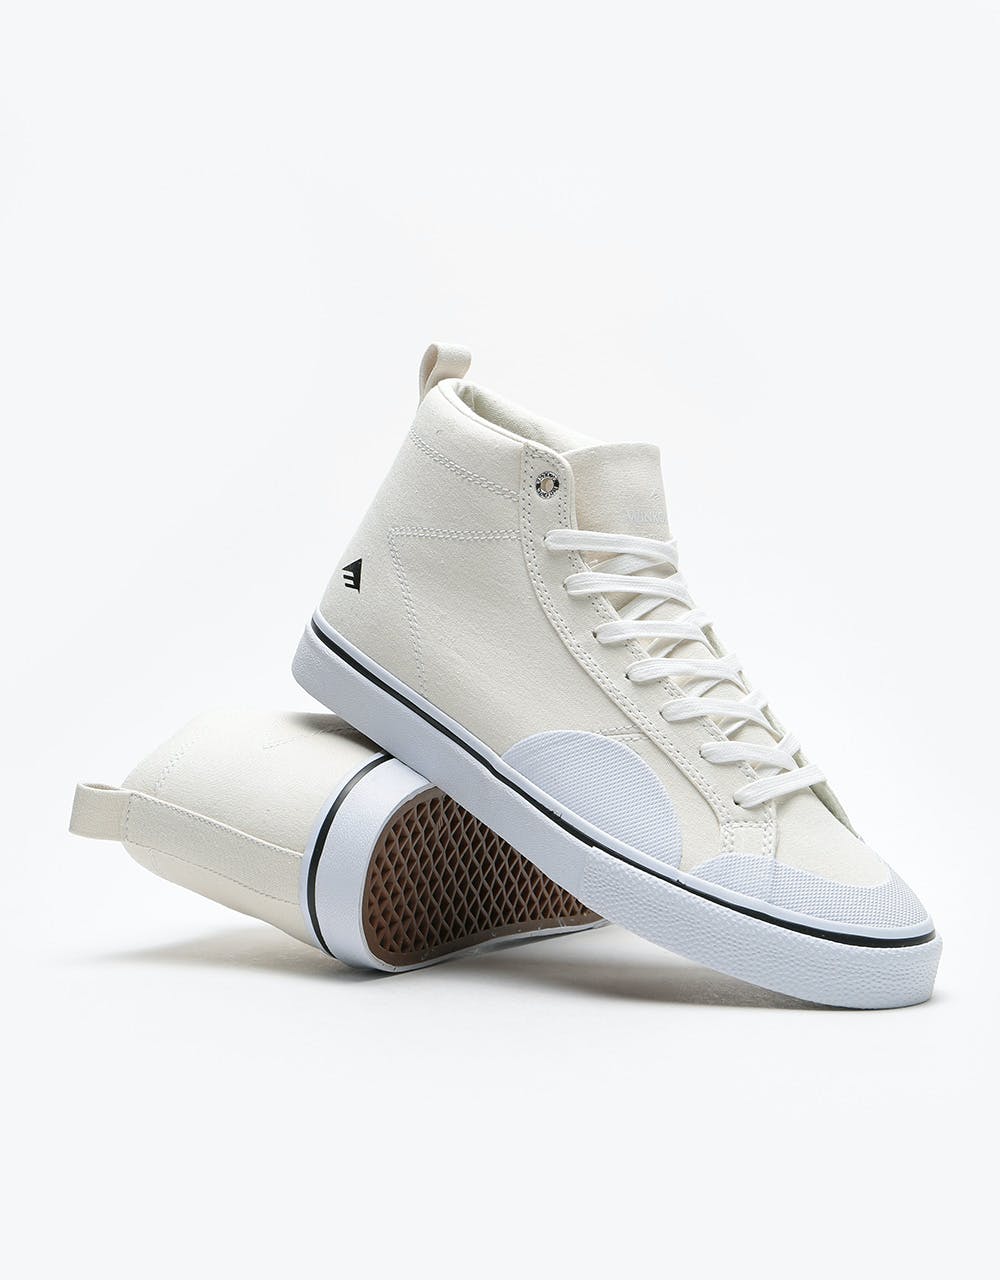 Emerica Omen High Skate Shoes - White